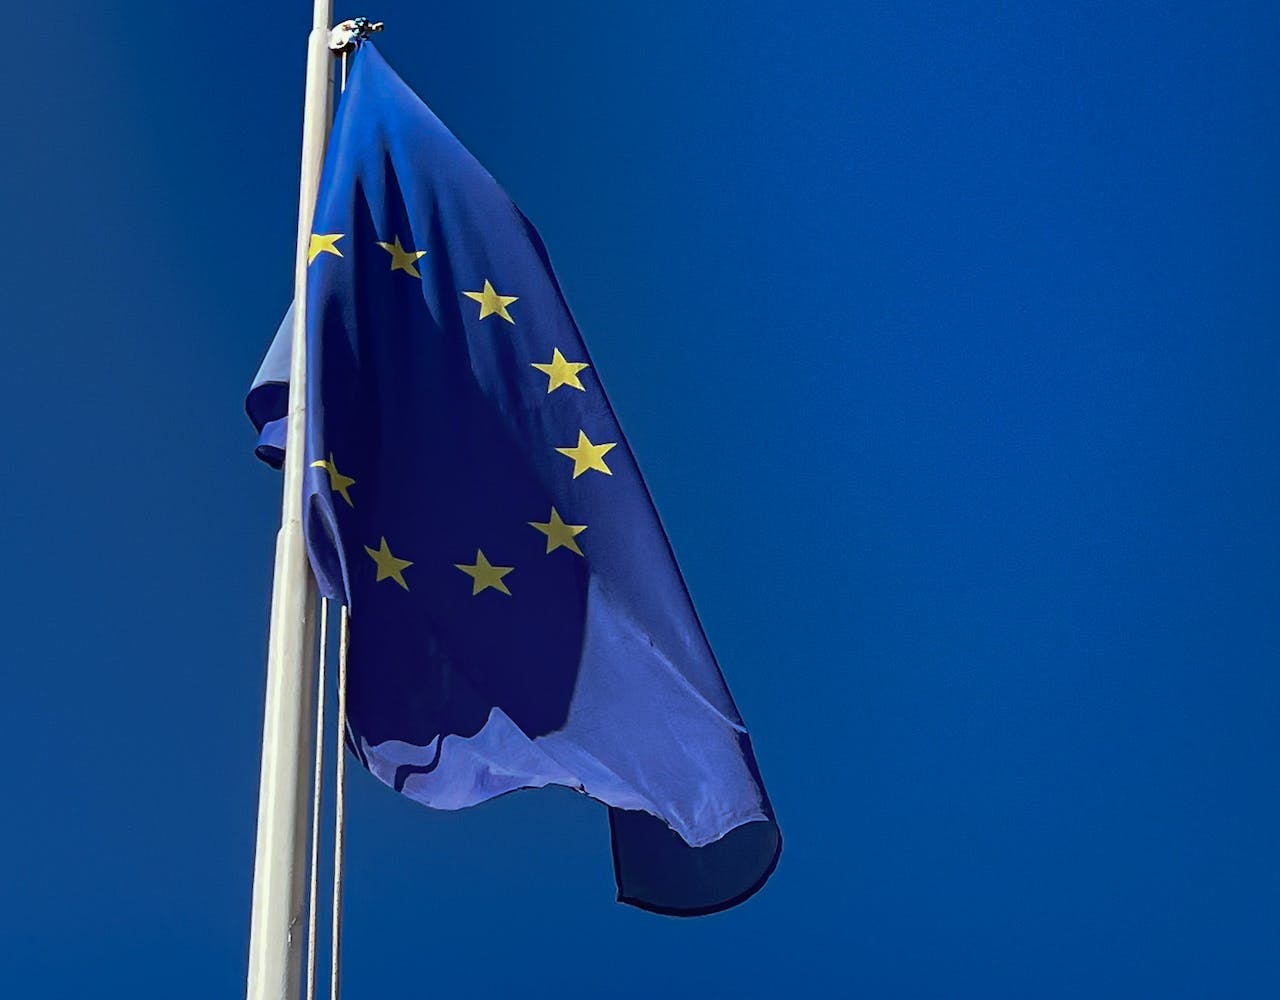 EU sets global precedent with comprehensive AI regulation deal